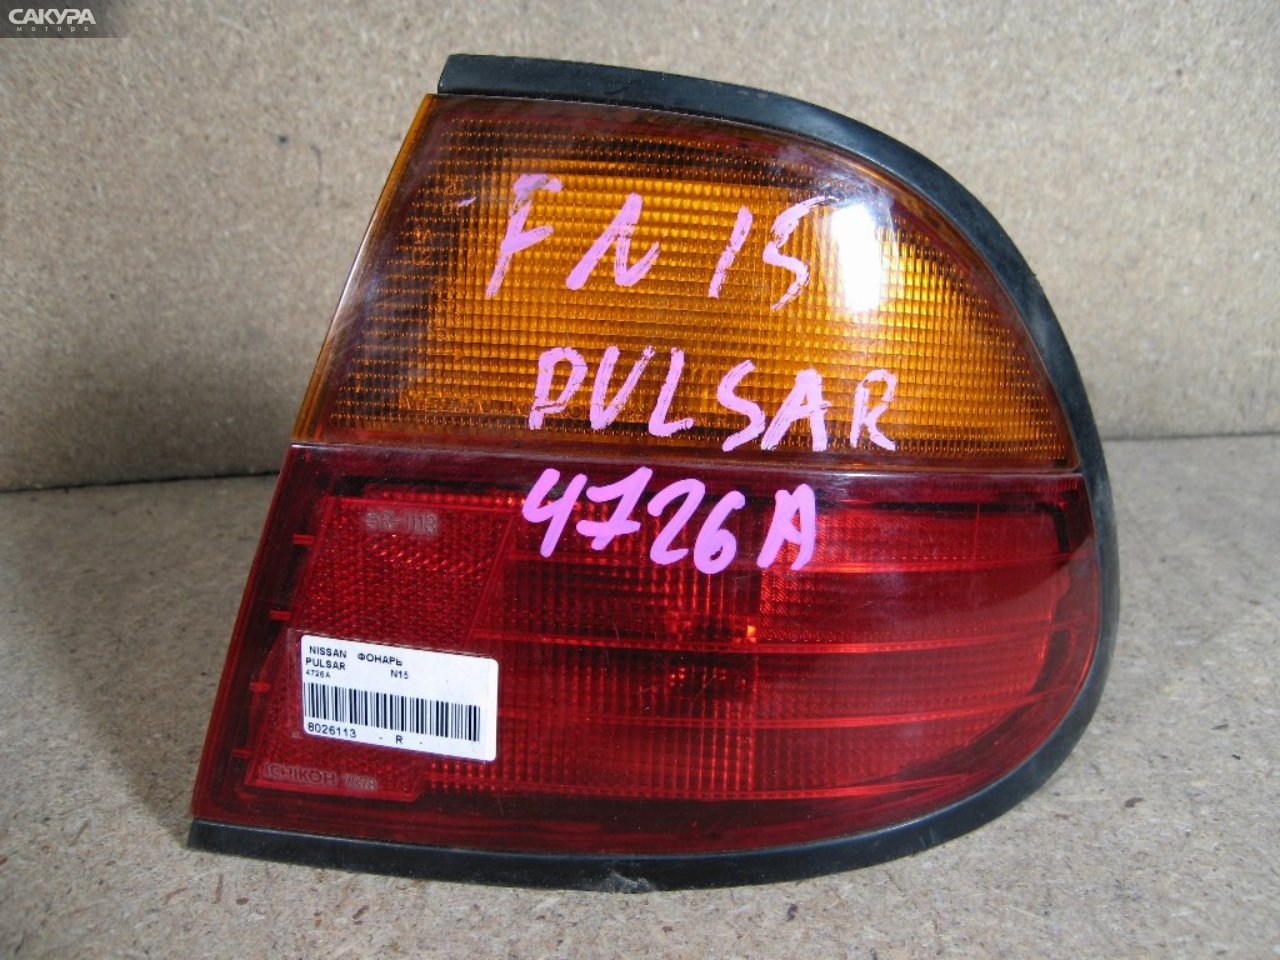 Фонарь стоп-сигнала правый Nissan Pulsar FN15 4726: купить в Сакура Абакан.